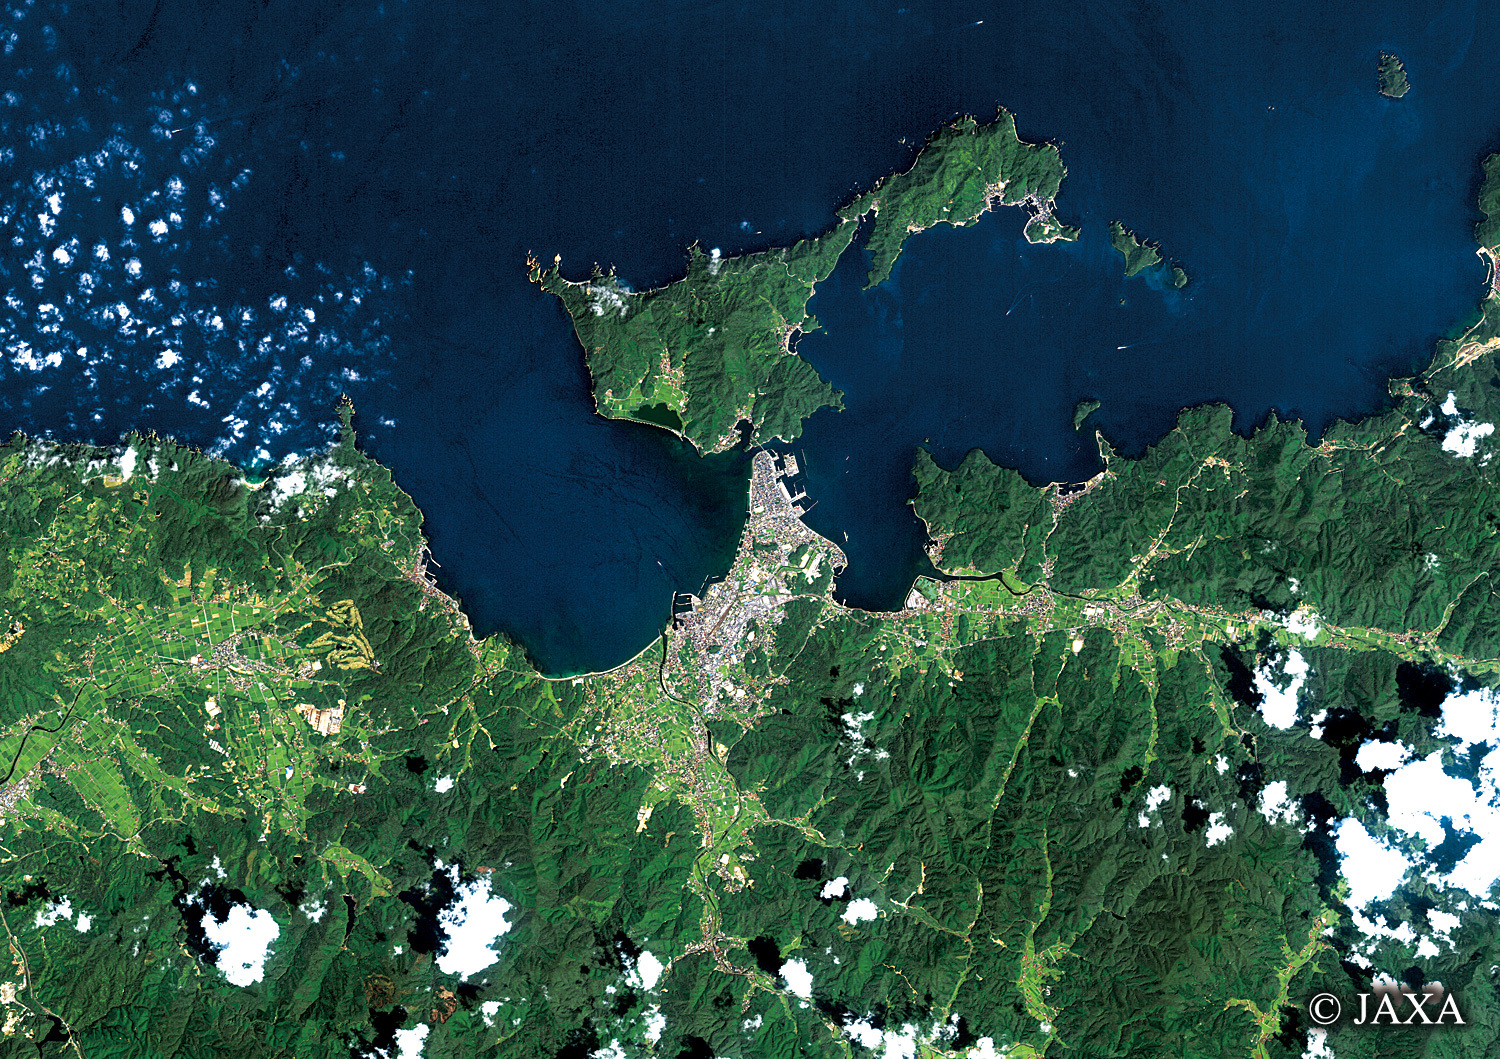 だいちから見た日本の都市 長門市青海島周辺:衛星画像